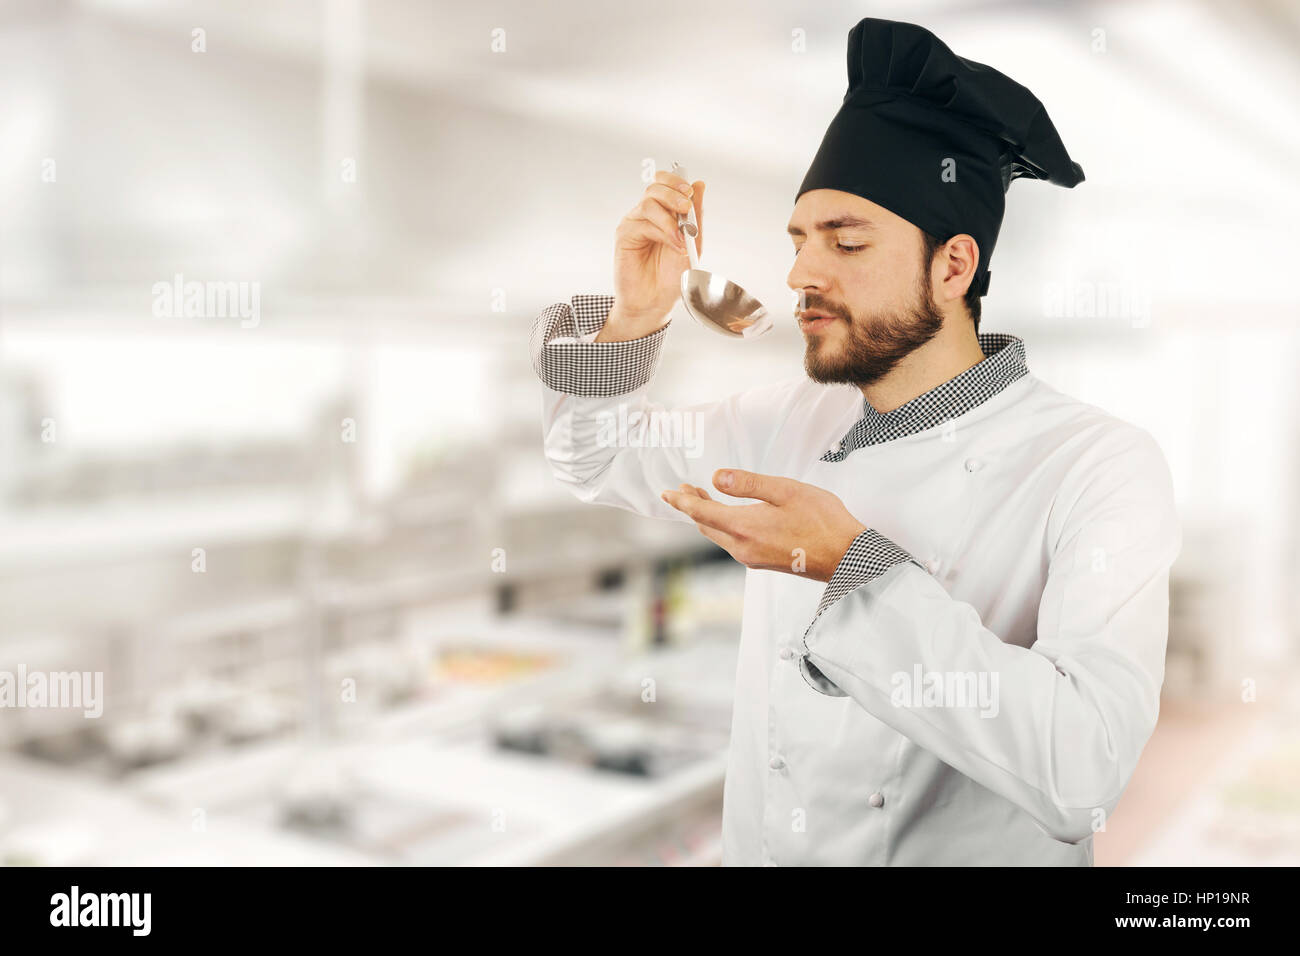 Qualitätskontrolle - Chef tasting Suppe aus Pfanne in Küche Stockfoto